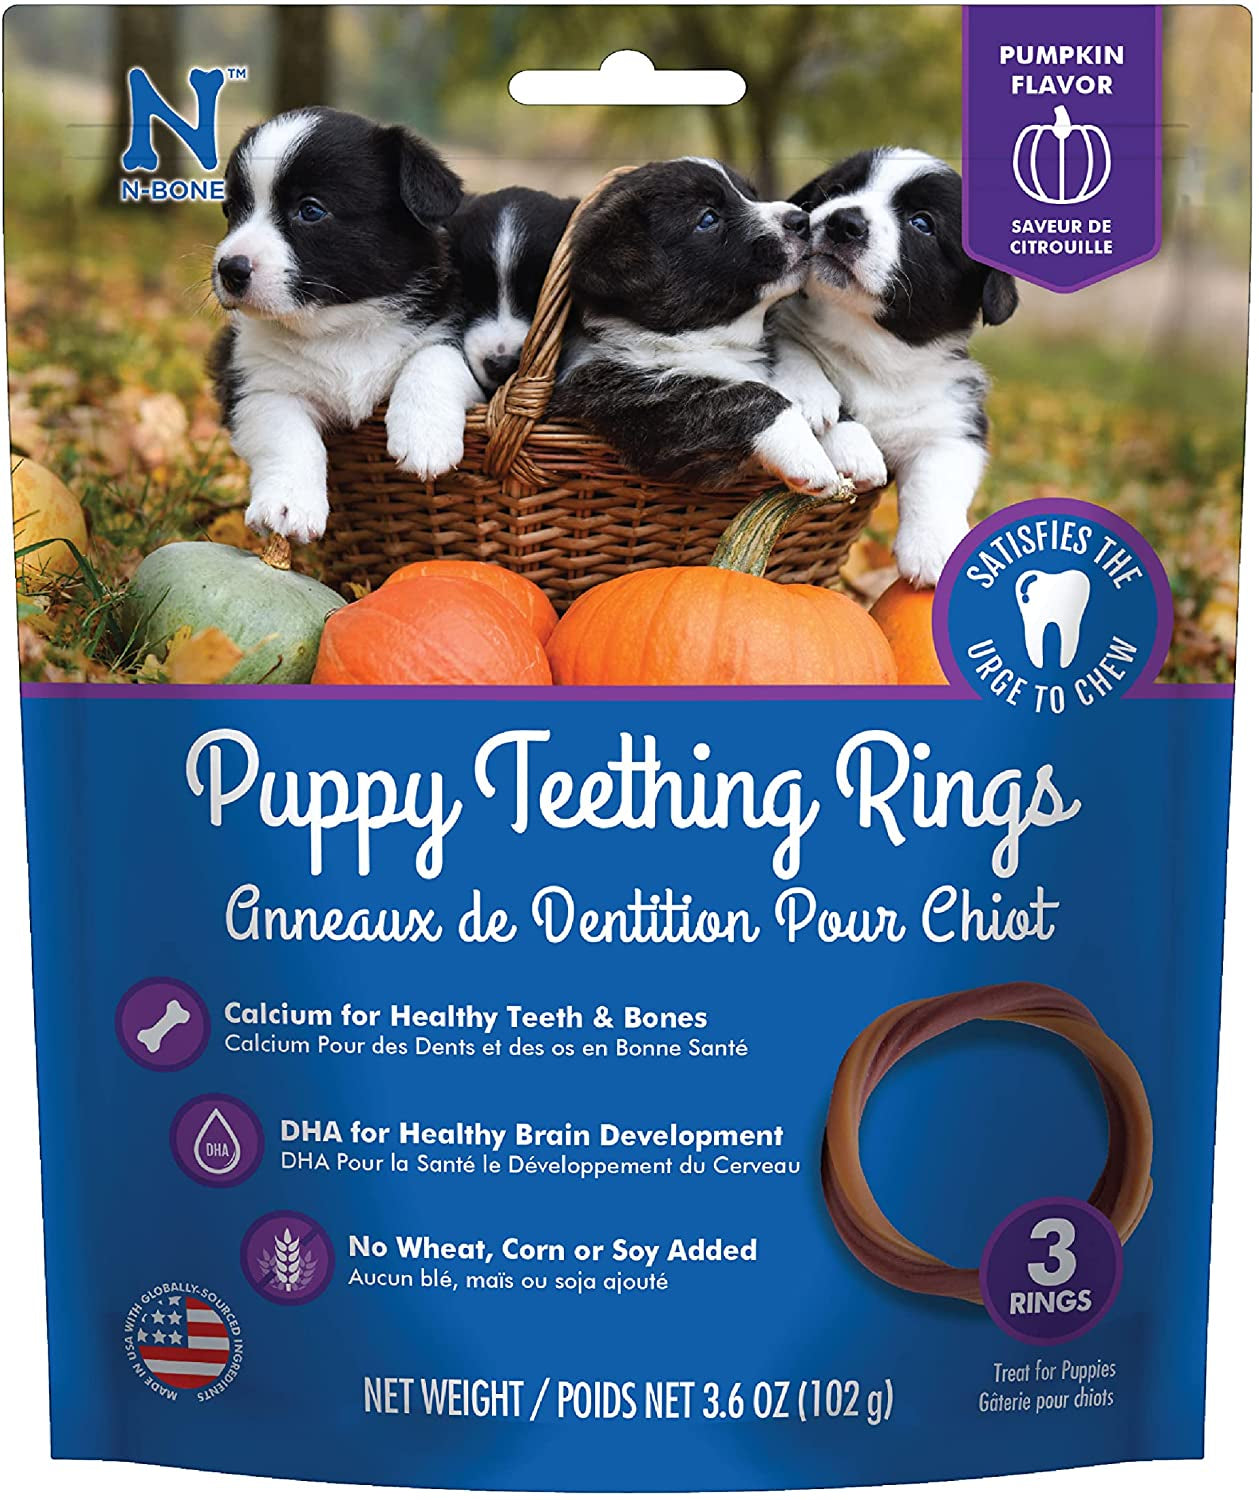 N-Bone Puppy Teething Ring Pumpkin